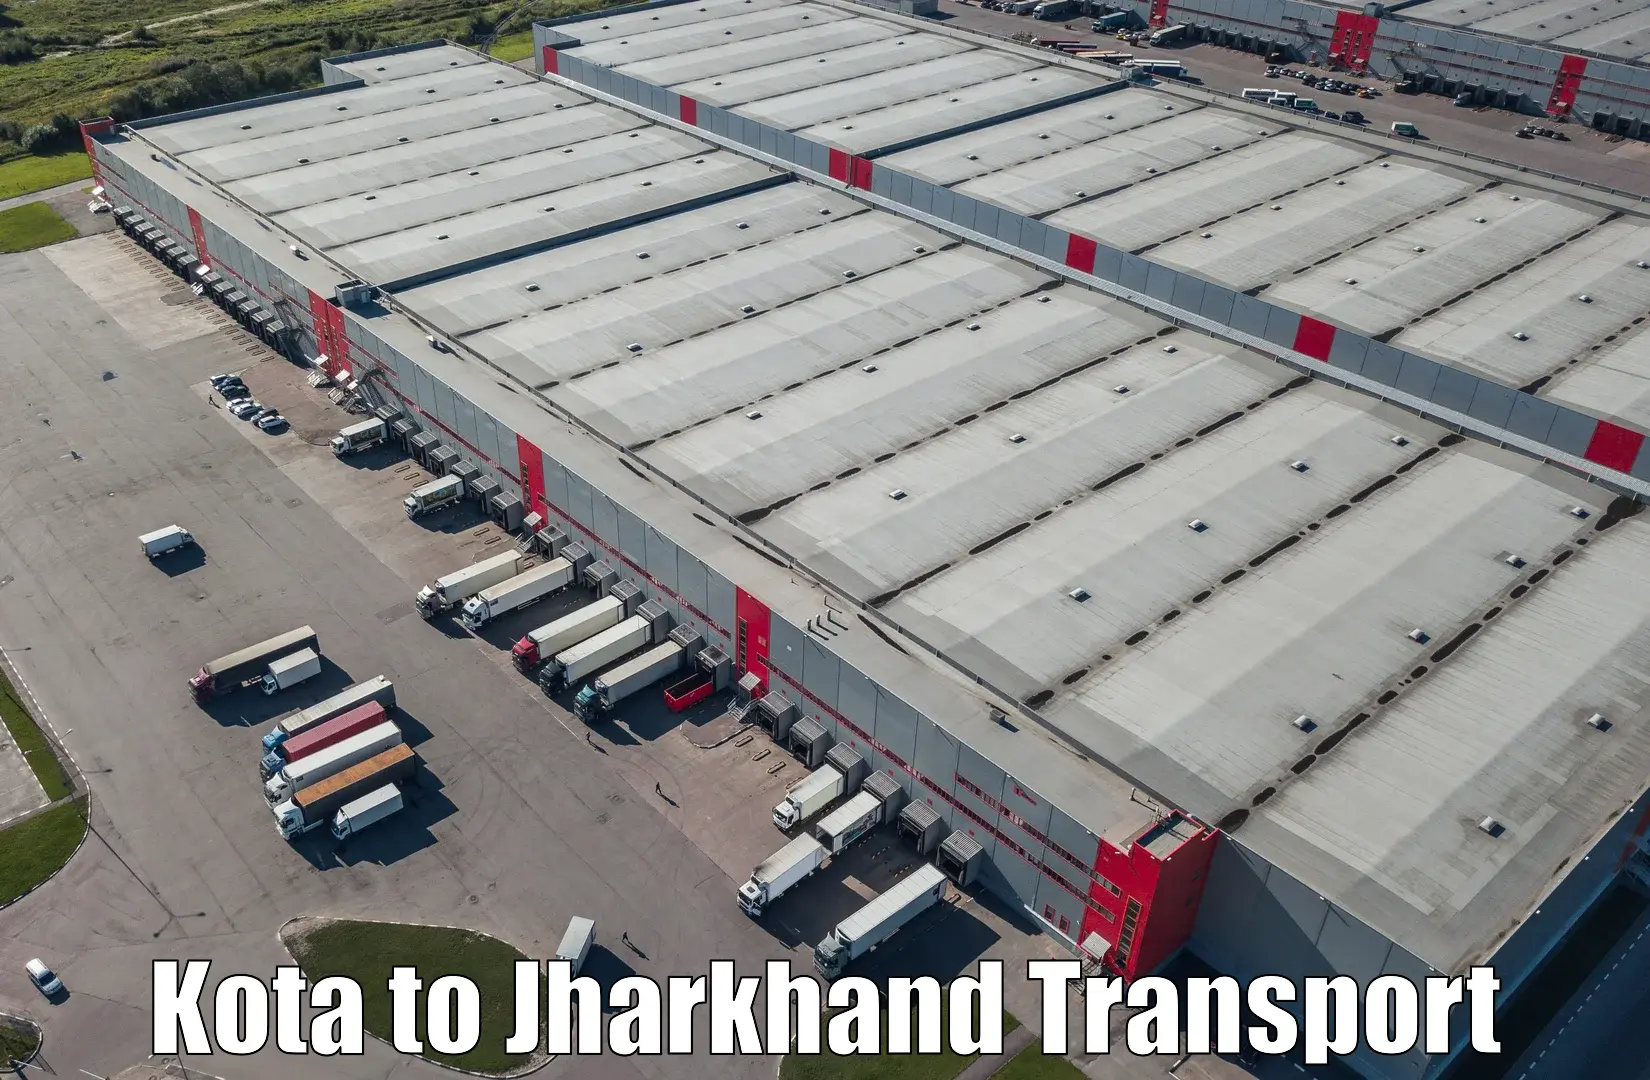 Furniture transport service Kota to IIT Dhanbad